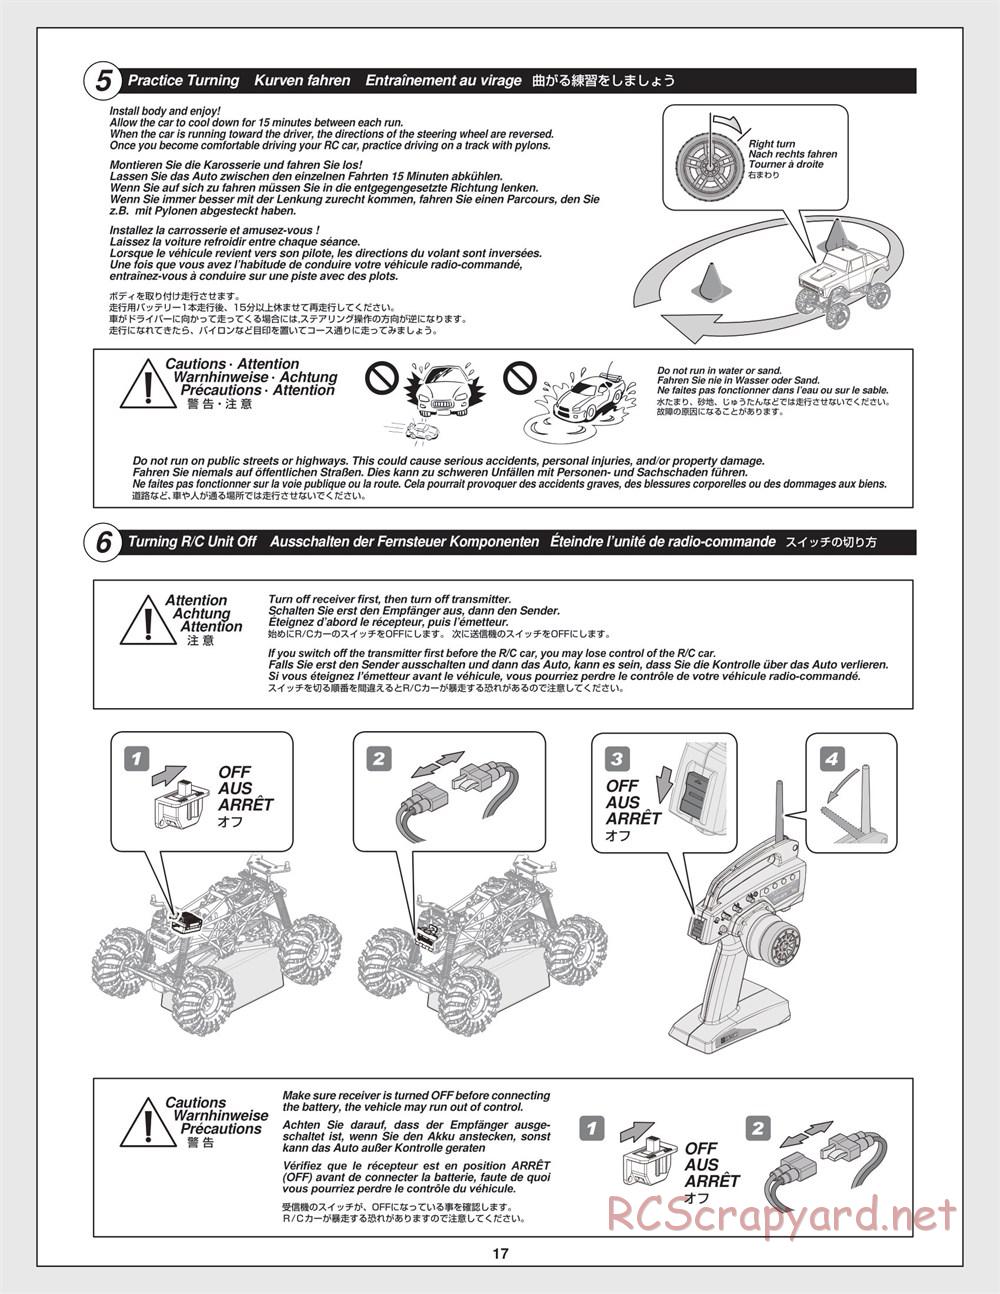 HPI - Crawler King - Manual - Page 17